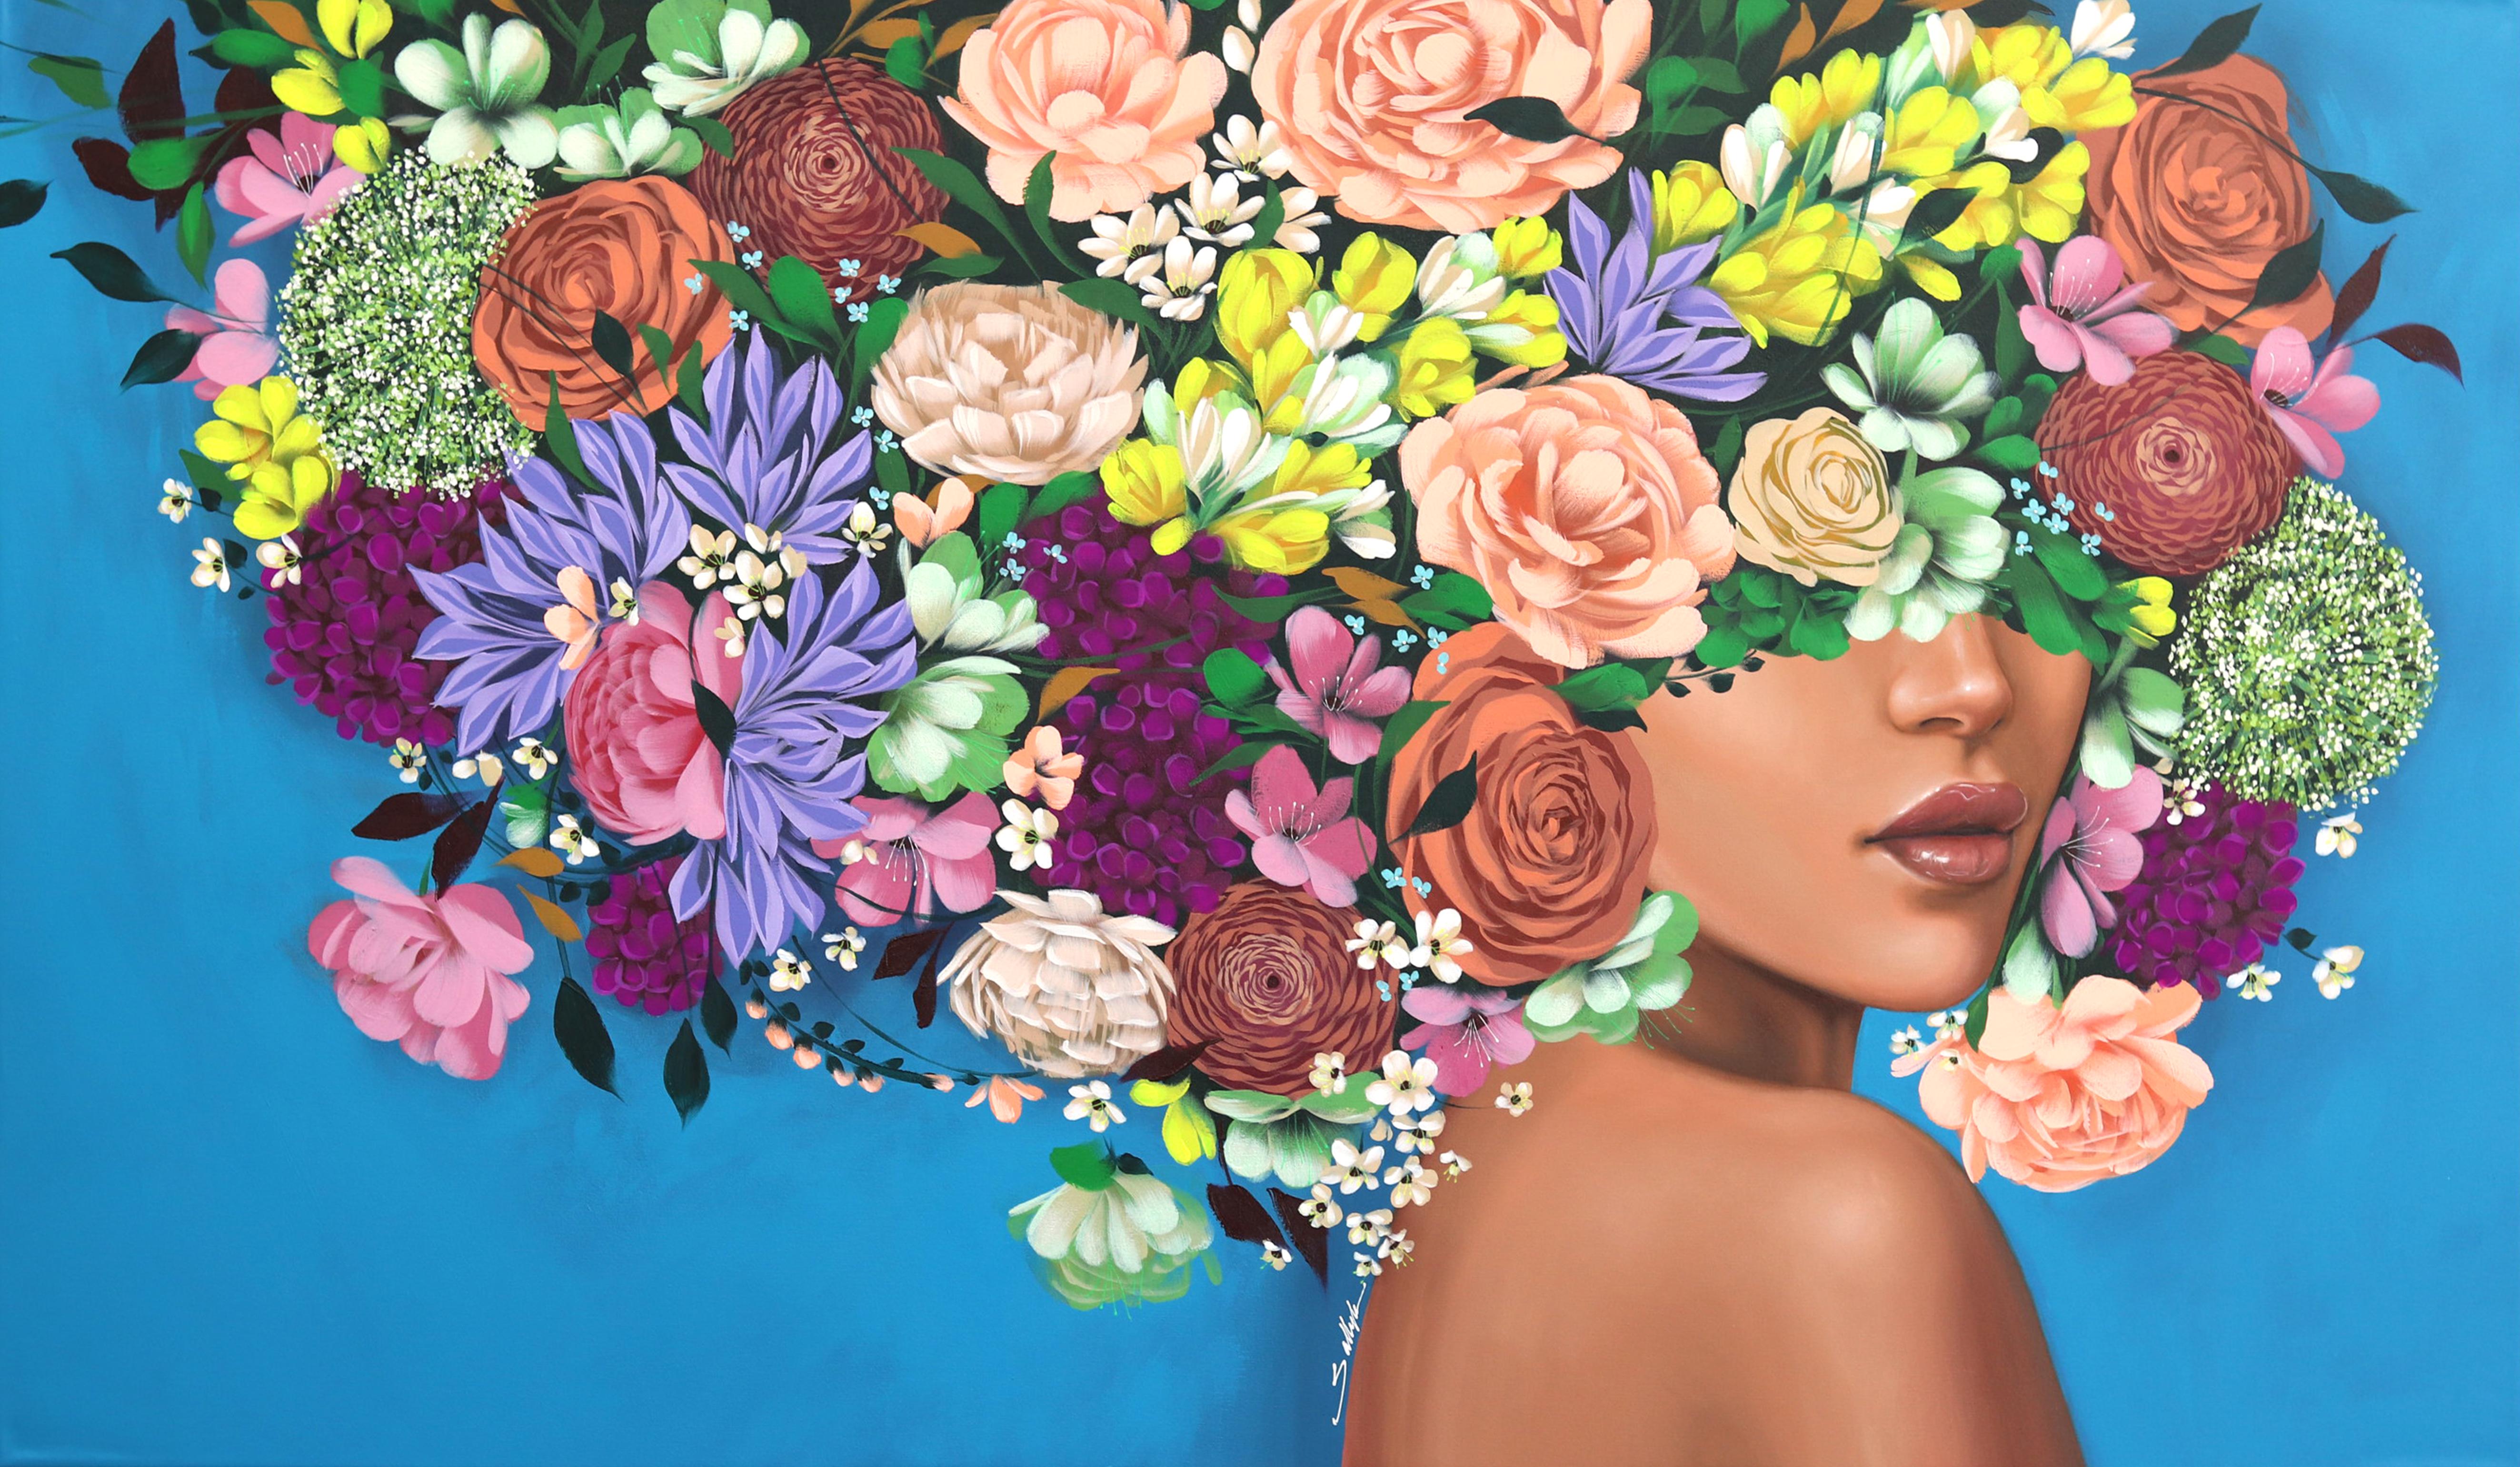 Wenn Ihr Blick auf einem von Sally K.K.s Gemälden verweilt, bemerken Sie, wie Sallys Pinselstriche Verspieltheit und Leben auf die Leinwand bringen, indem sie unerwartete Bilder und Formen von Blumen oder abstrakte Farbkombinationen einbeziehen, um